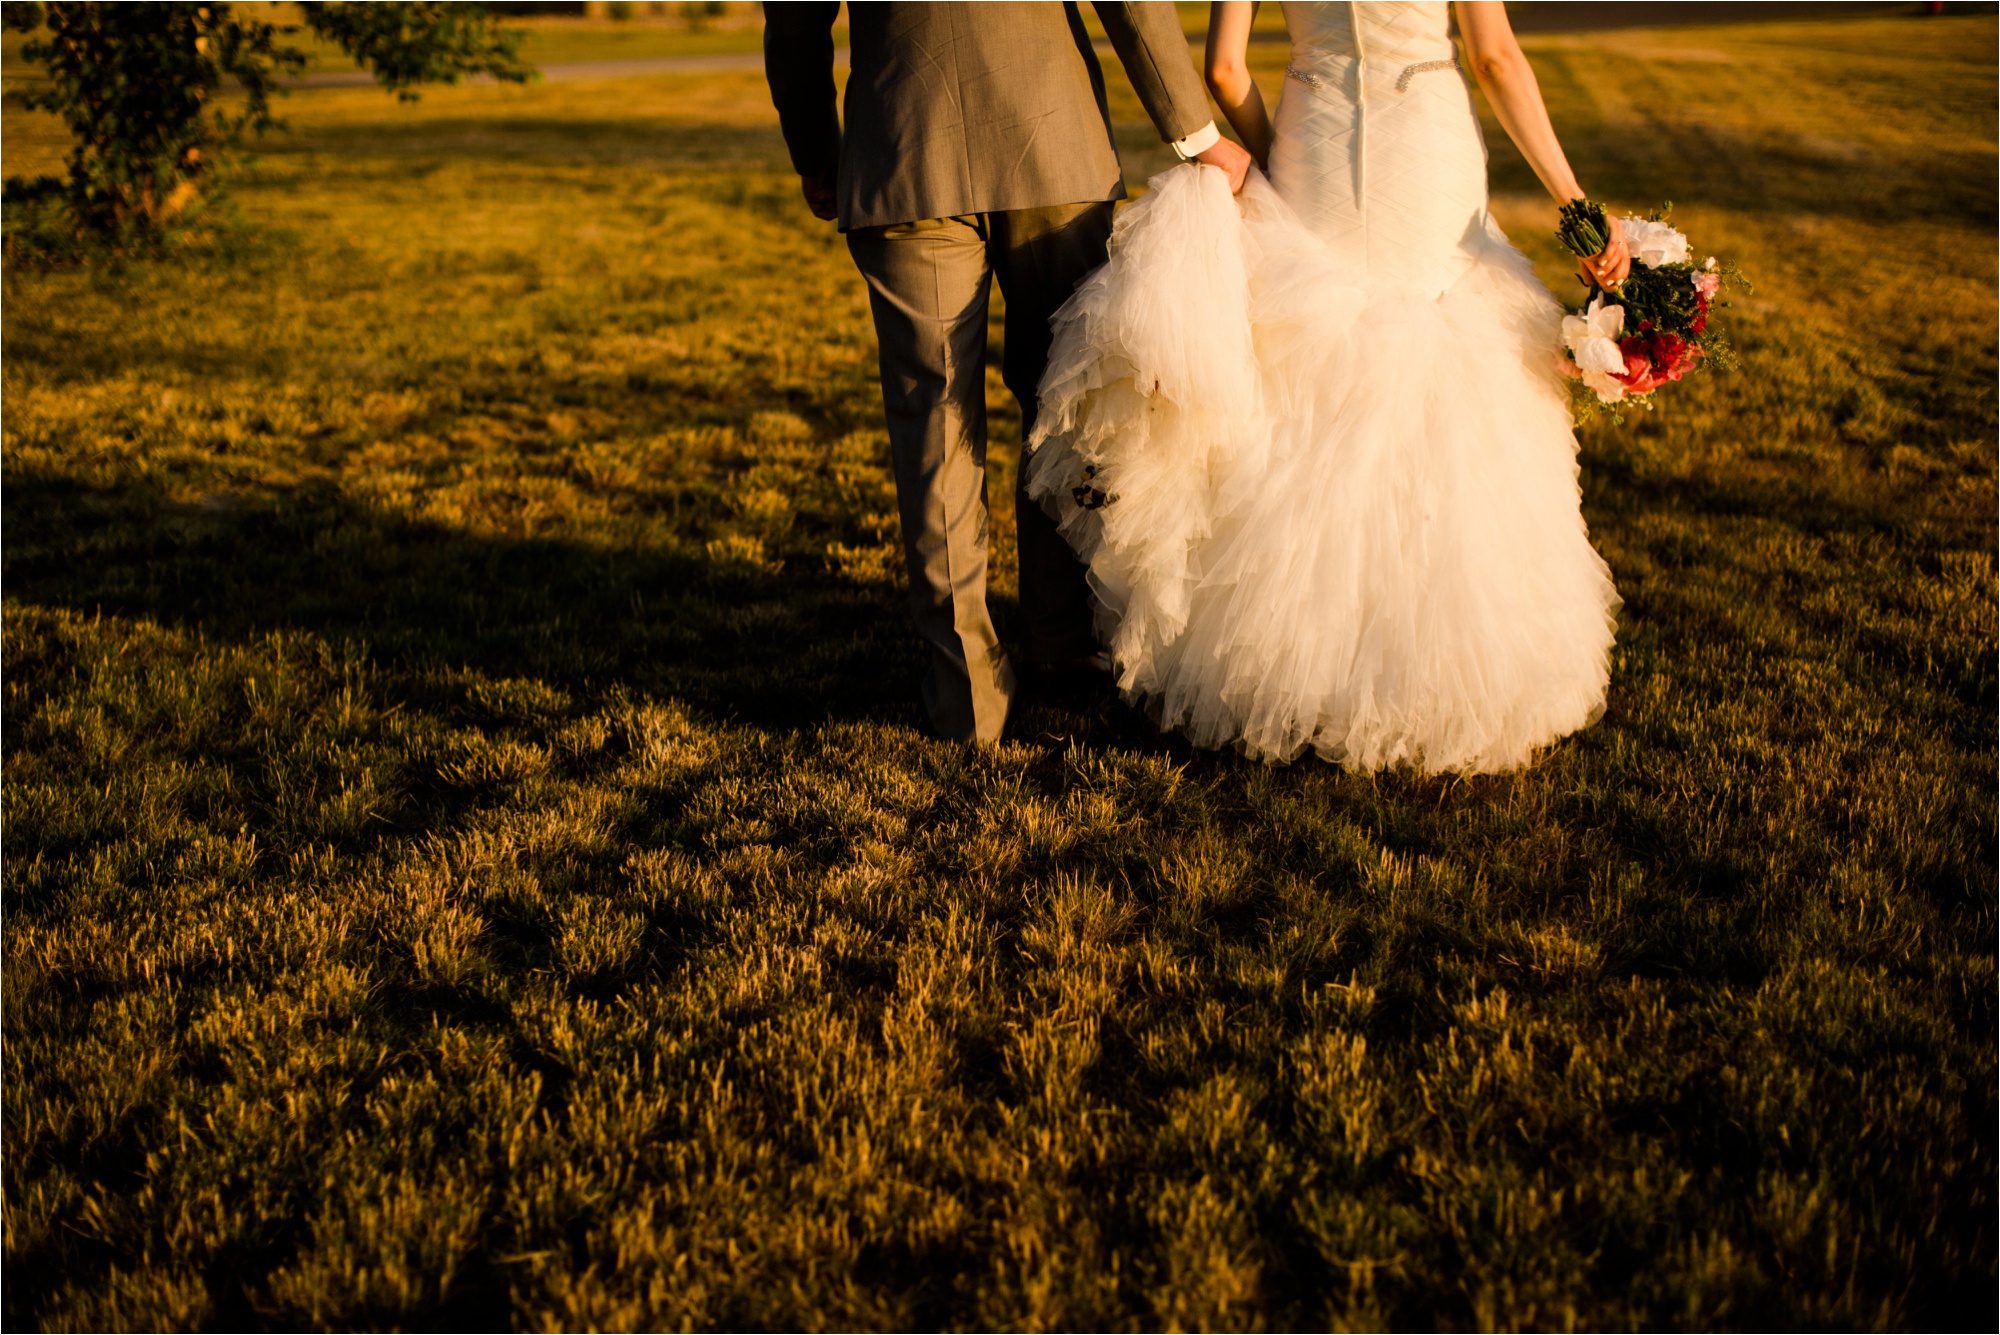 Caitlin and Luke Photography, Bloomington Normal Wedding Photographers, Illinois Wedding Photographers, Illinois Husband and Wife Wedding Photography Team_0356.jpg